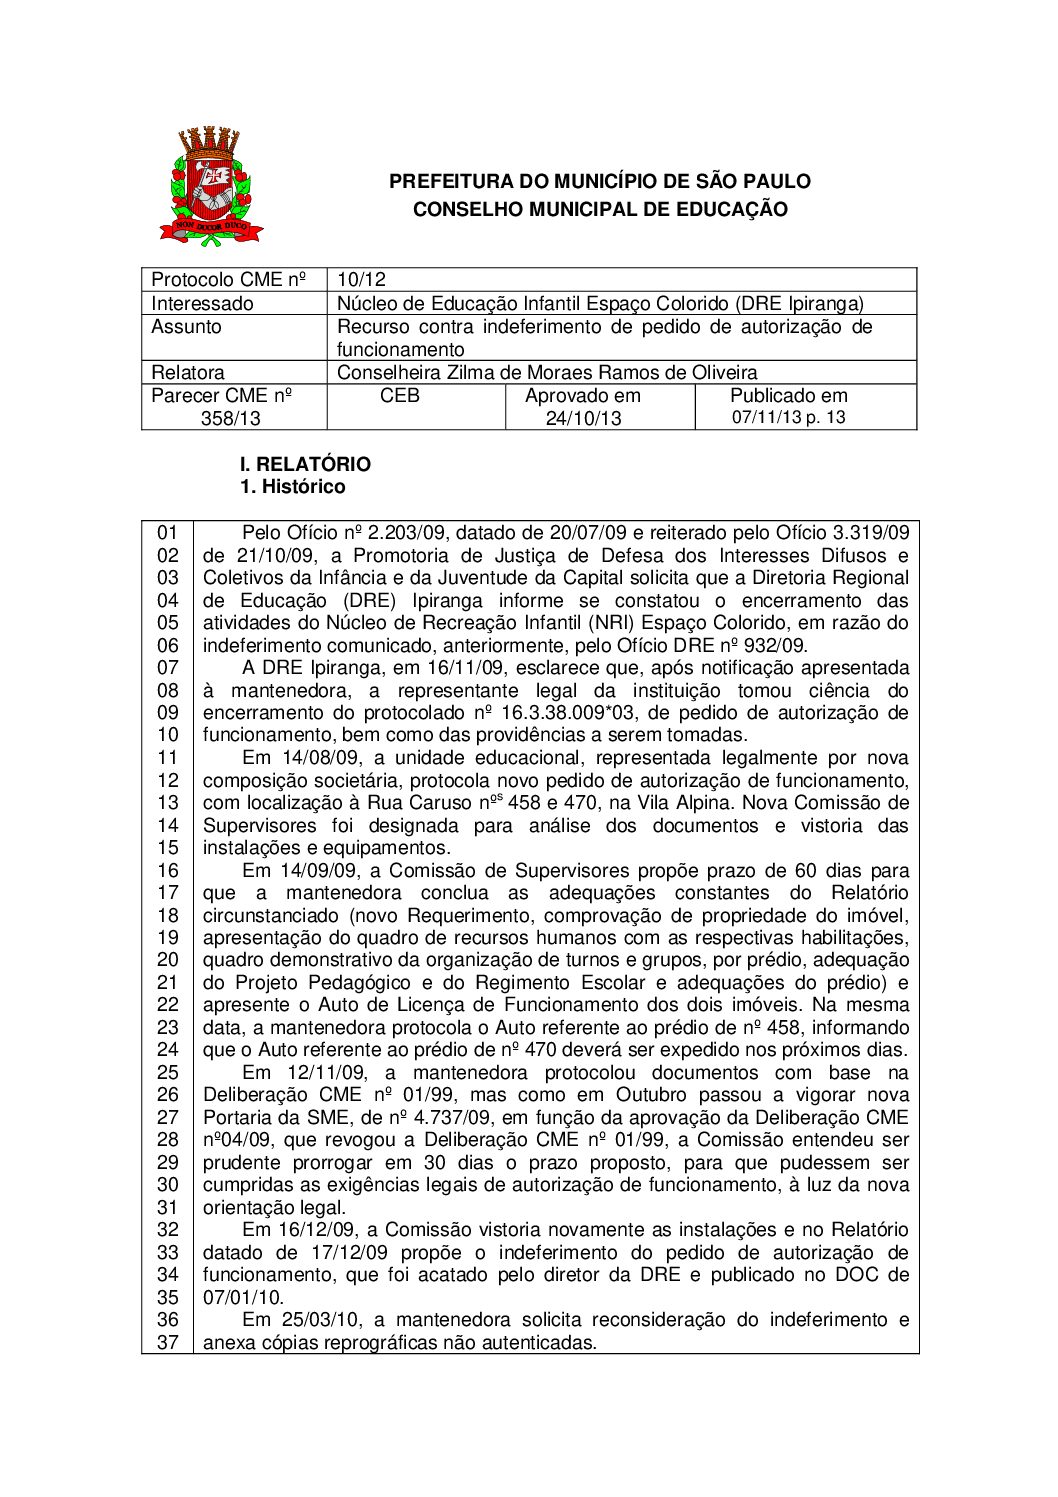 Parecer CME nº 358/2013 - Núcleo de Educação Infantil Espaço Colorido (DRE Ipiranga) - Recurso contra indeferimento de pedido de autorização de funcionamento 